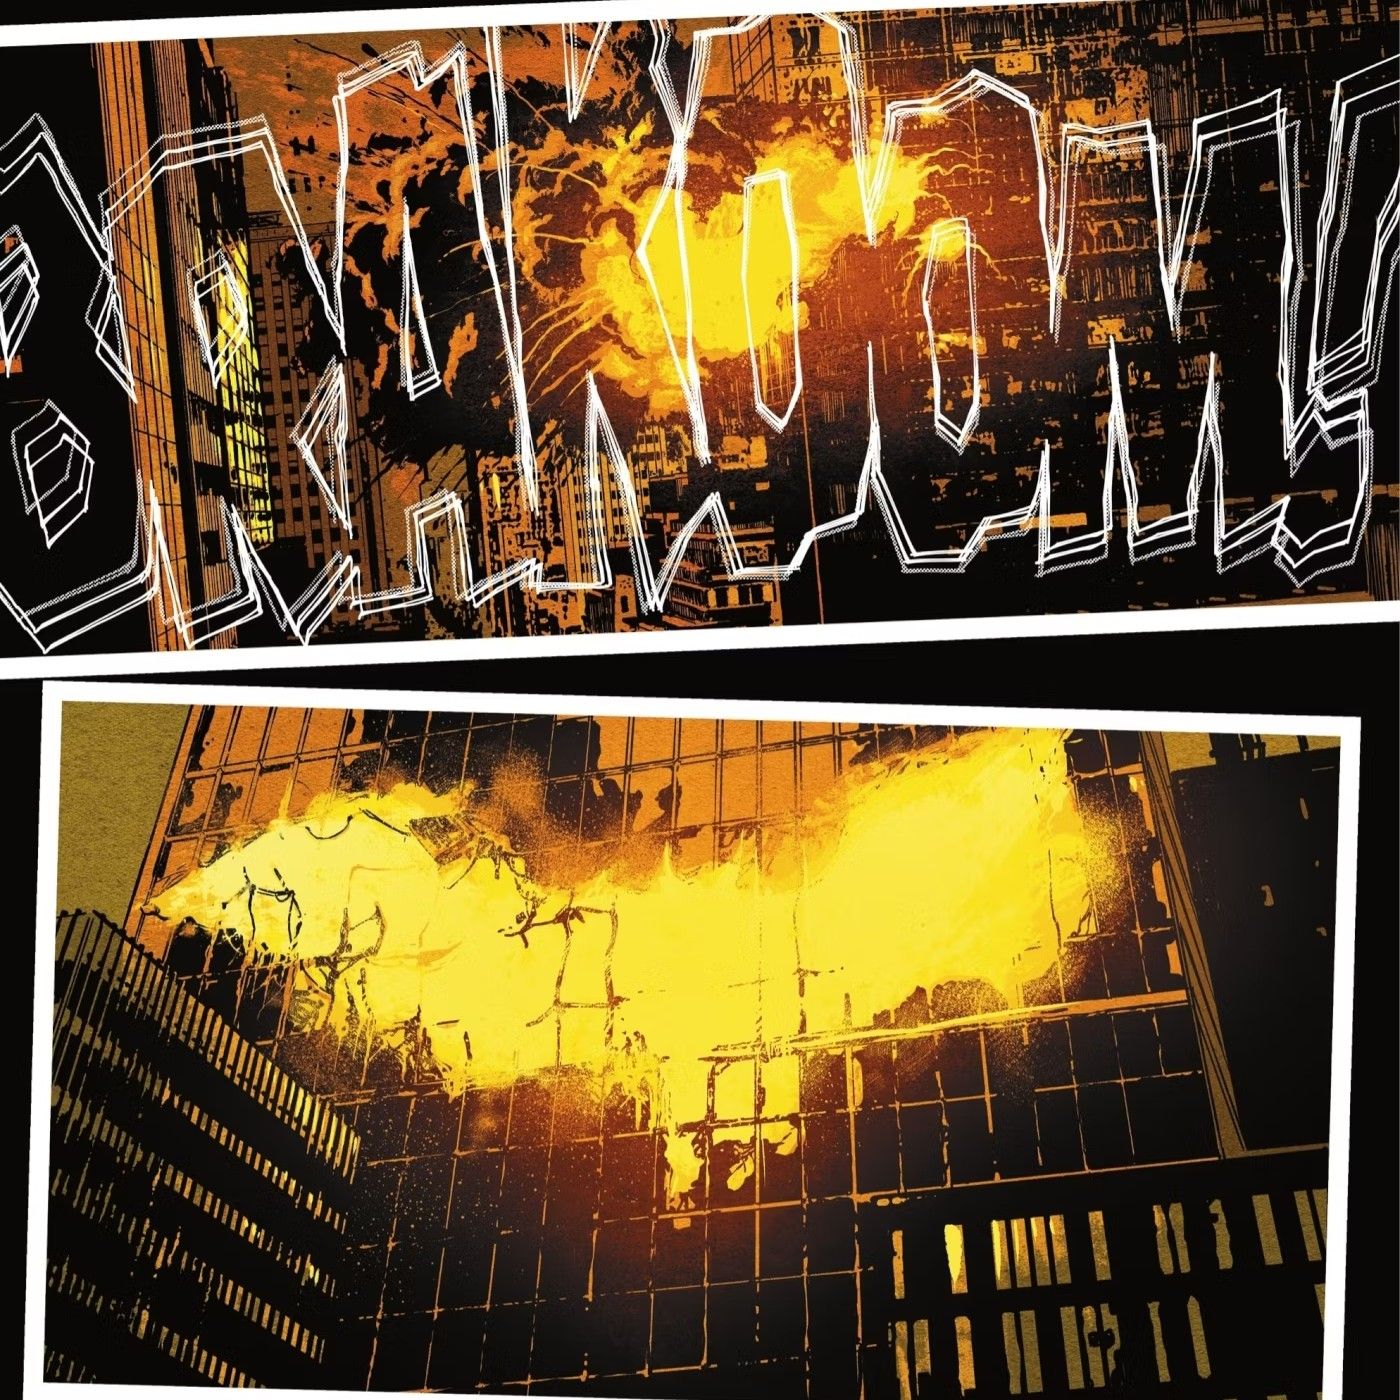 Painéis de quadrinhos: o símbolo do Batman aparece em chamas após a explosão de um prédio.